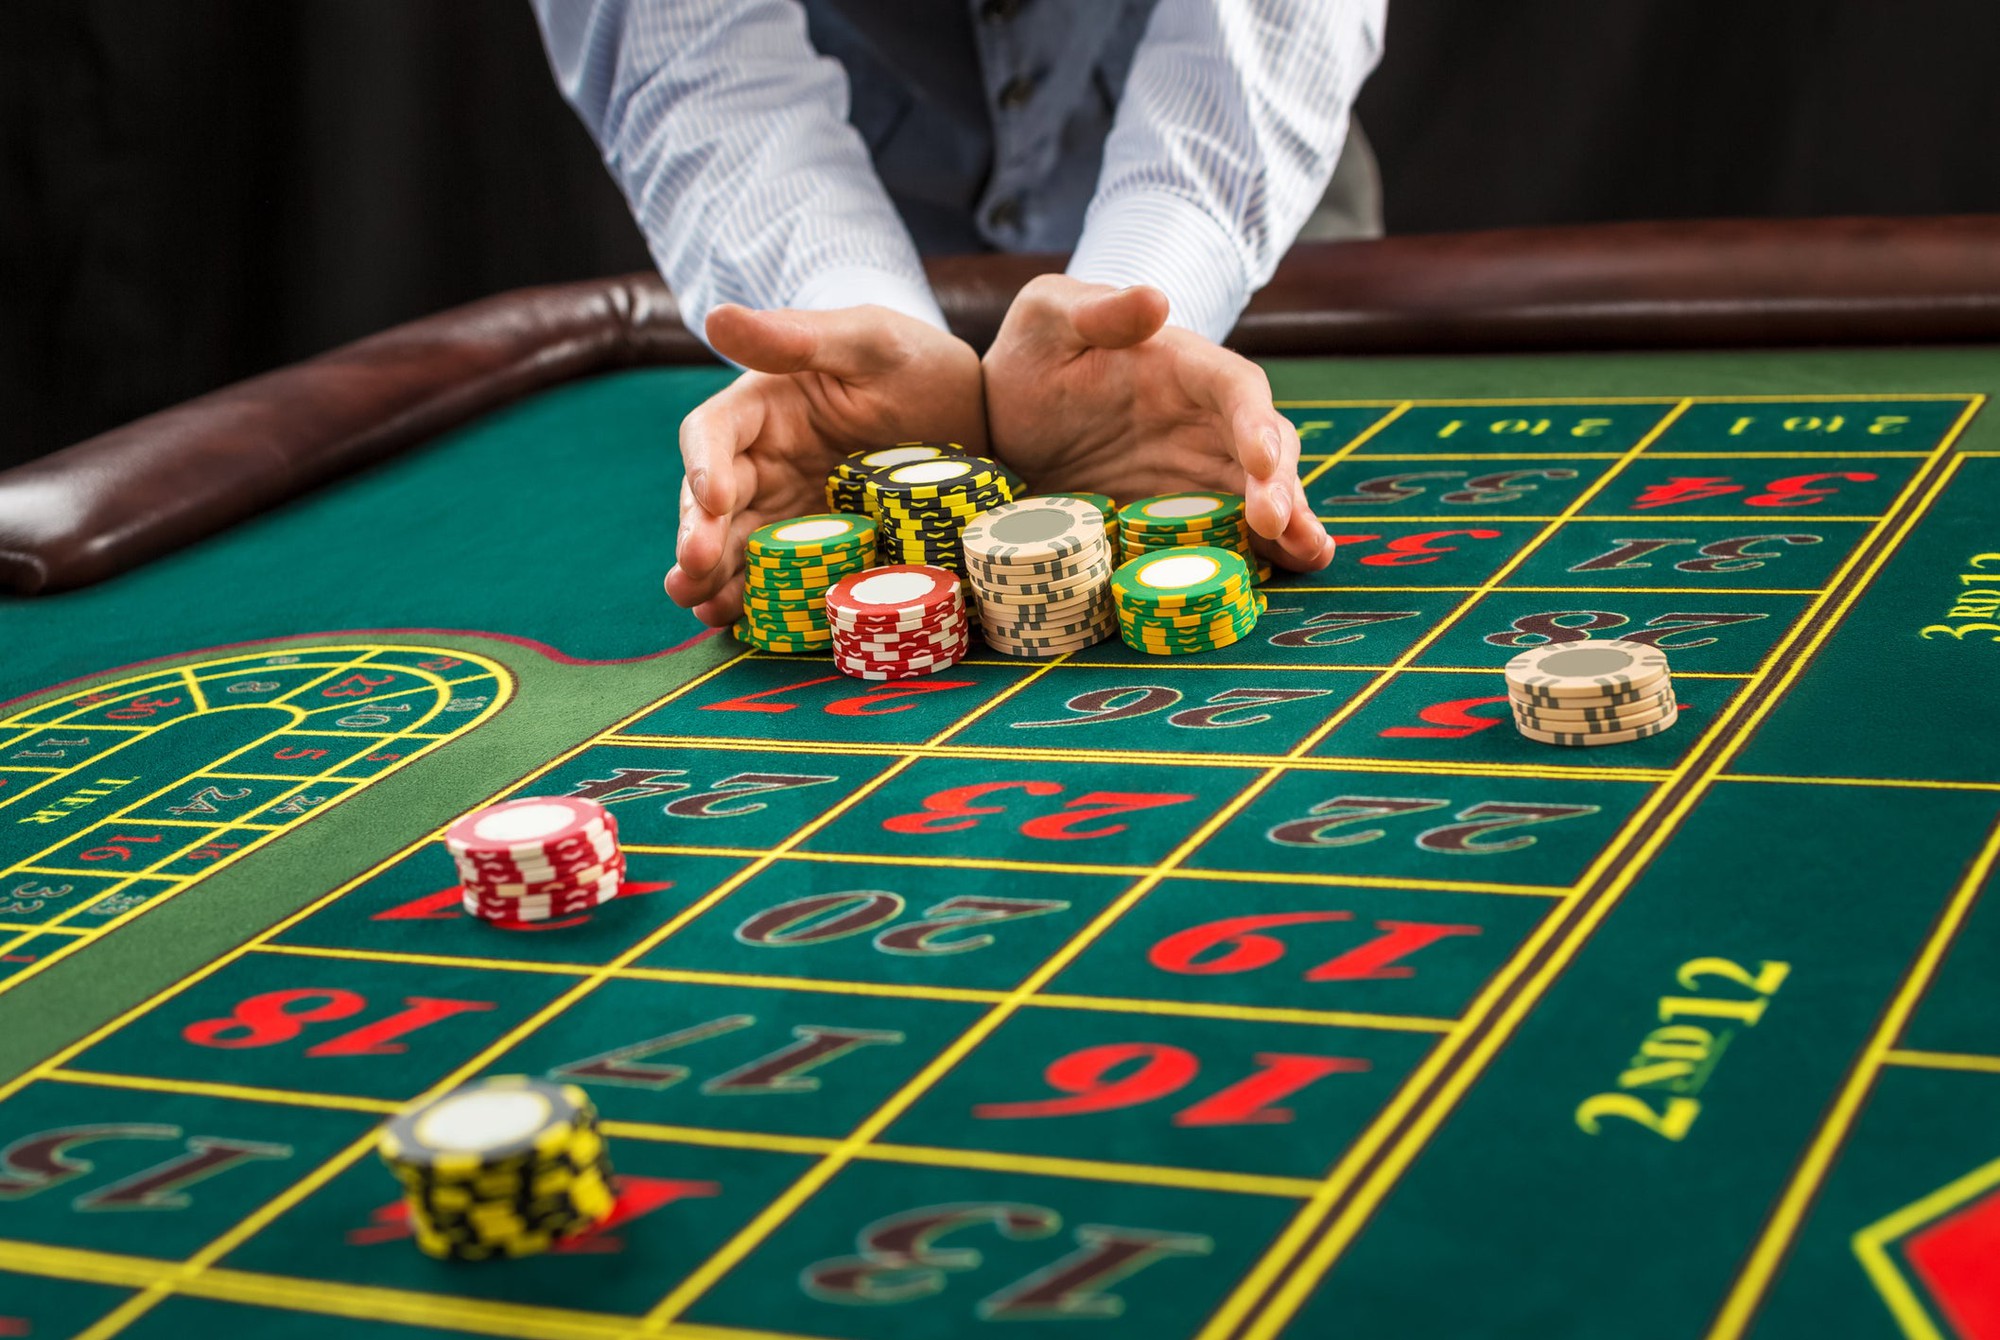 Подпольное новосибирское казино разыгрывало поездку в легальное казино